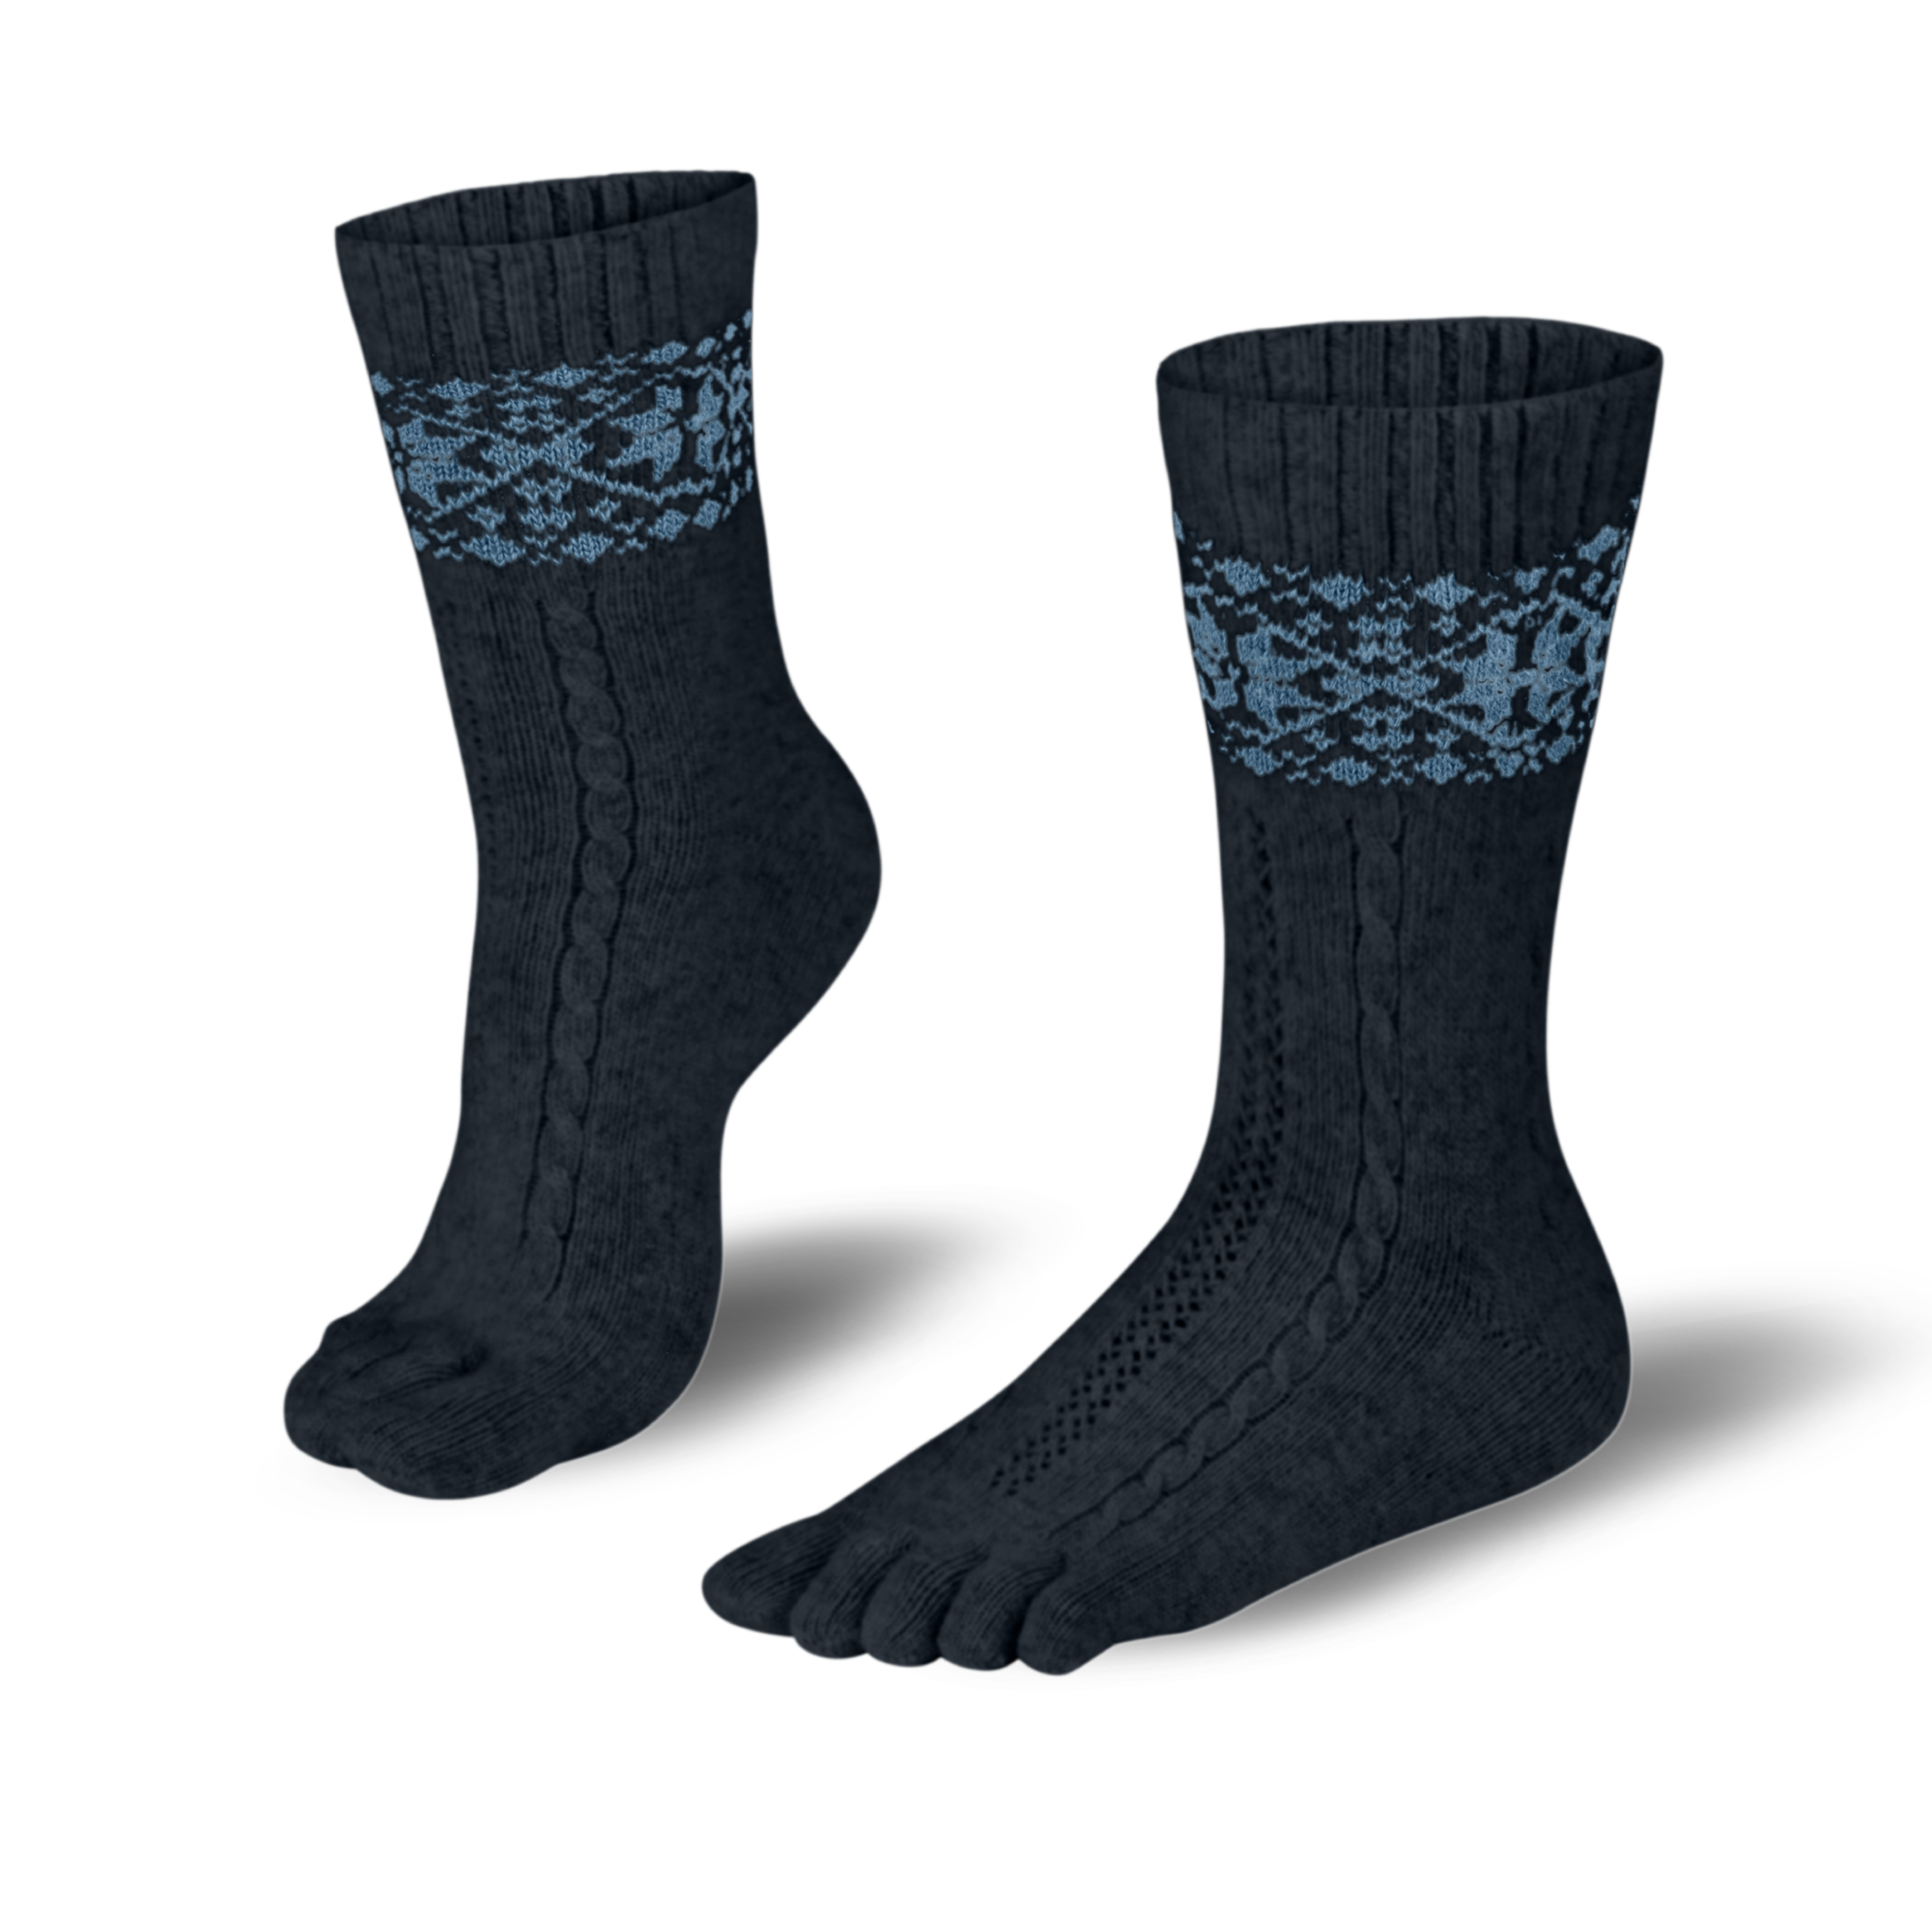 Knitido  chaussettes à orteils chaud en mérinos & cachemire avec motif de taches de neige en anthracite/bleu 